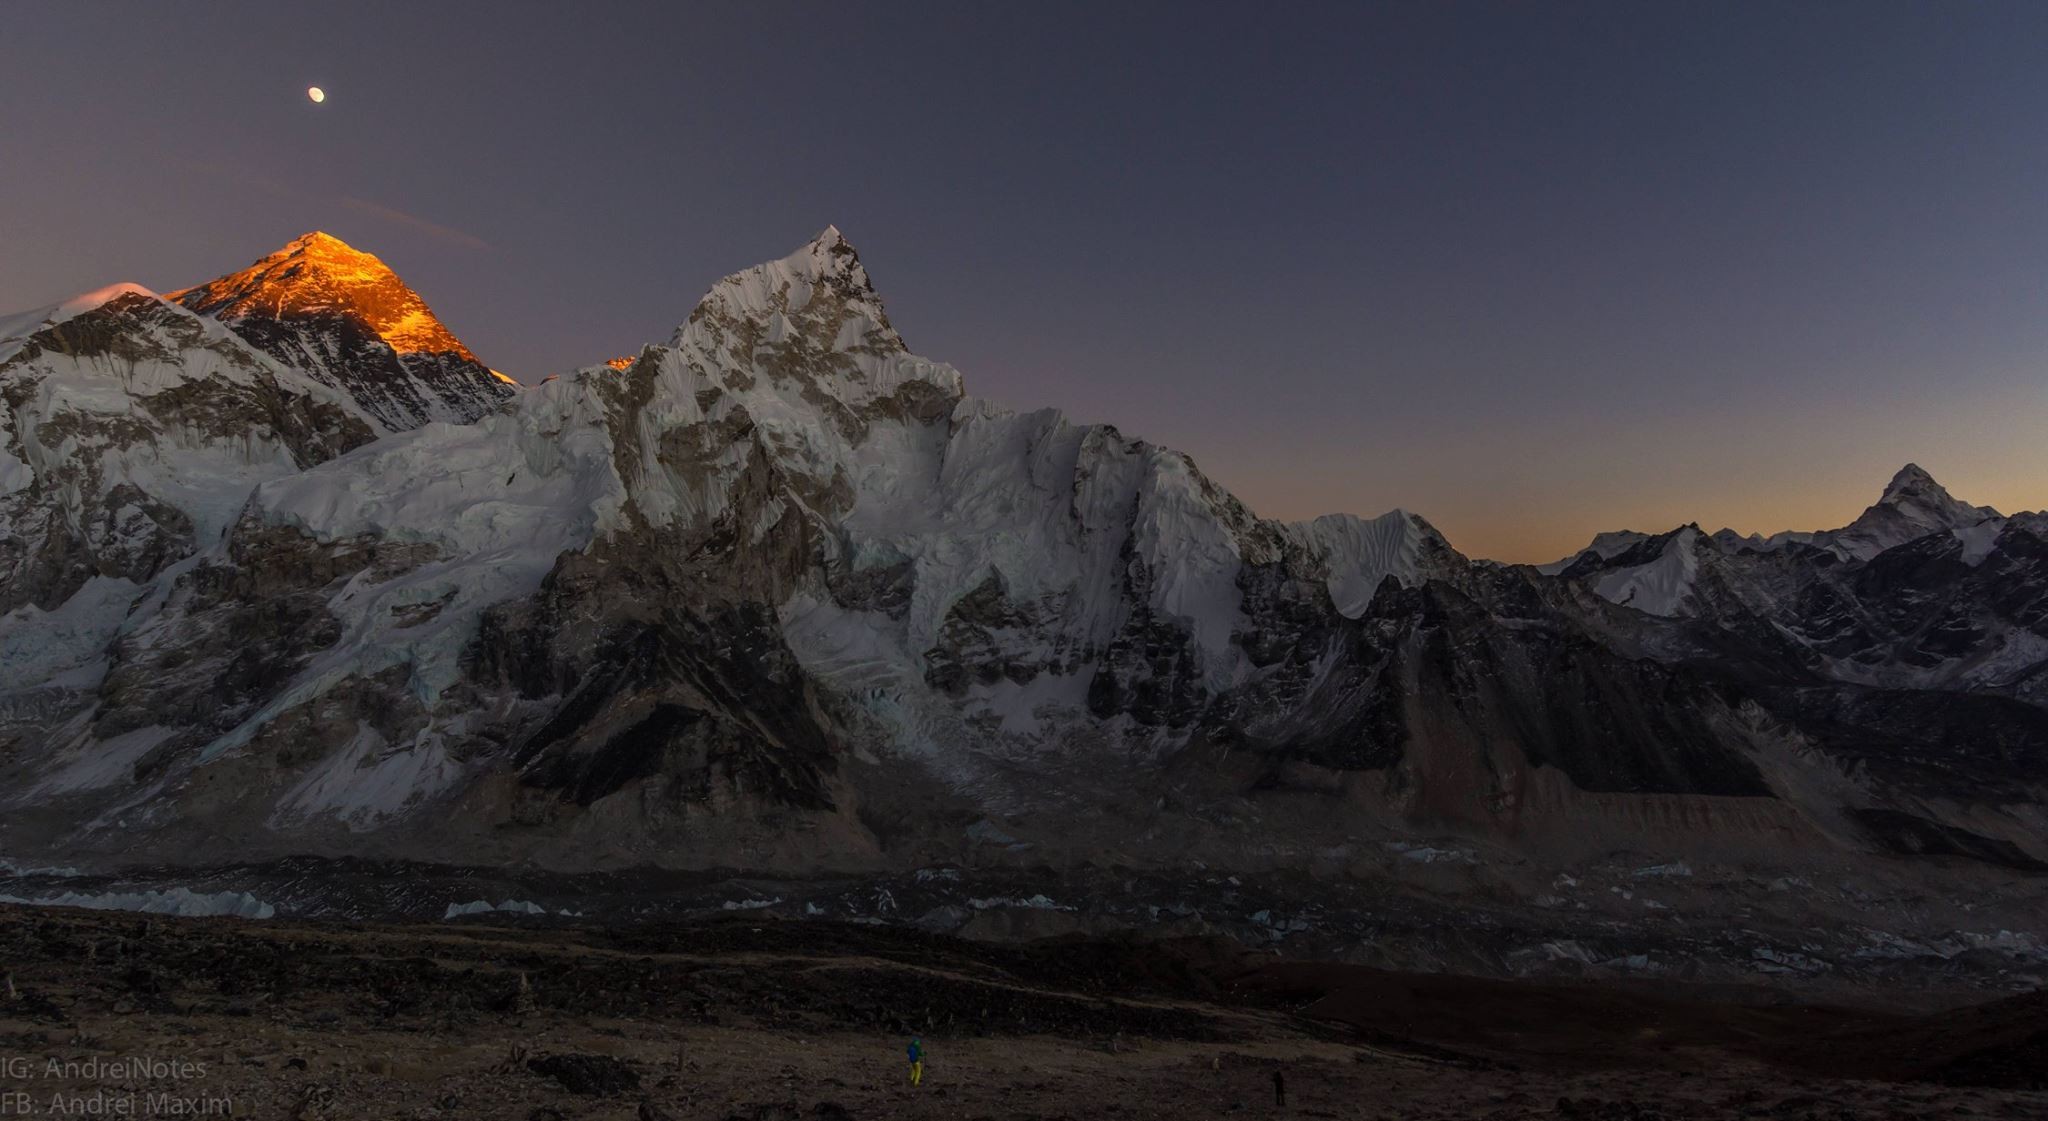 General 2048x1121 Mount Everest sky stars nature landscape